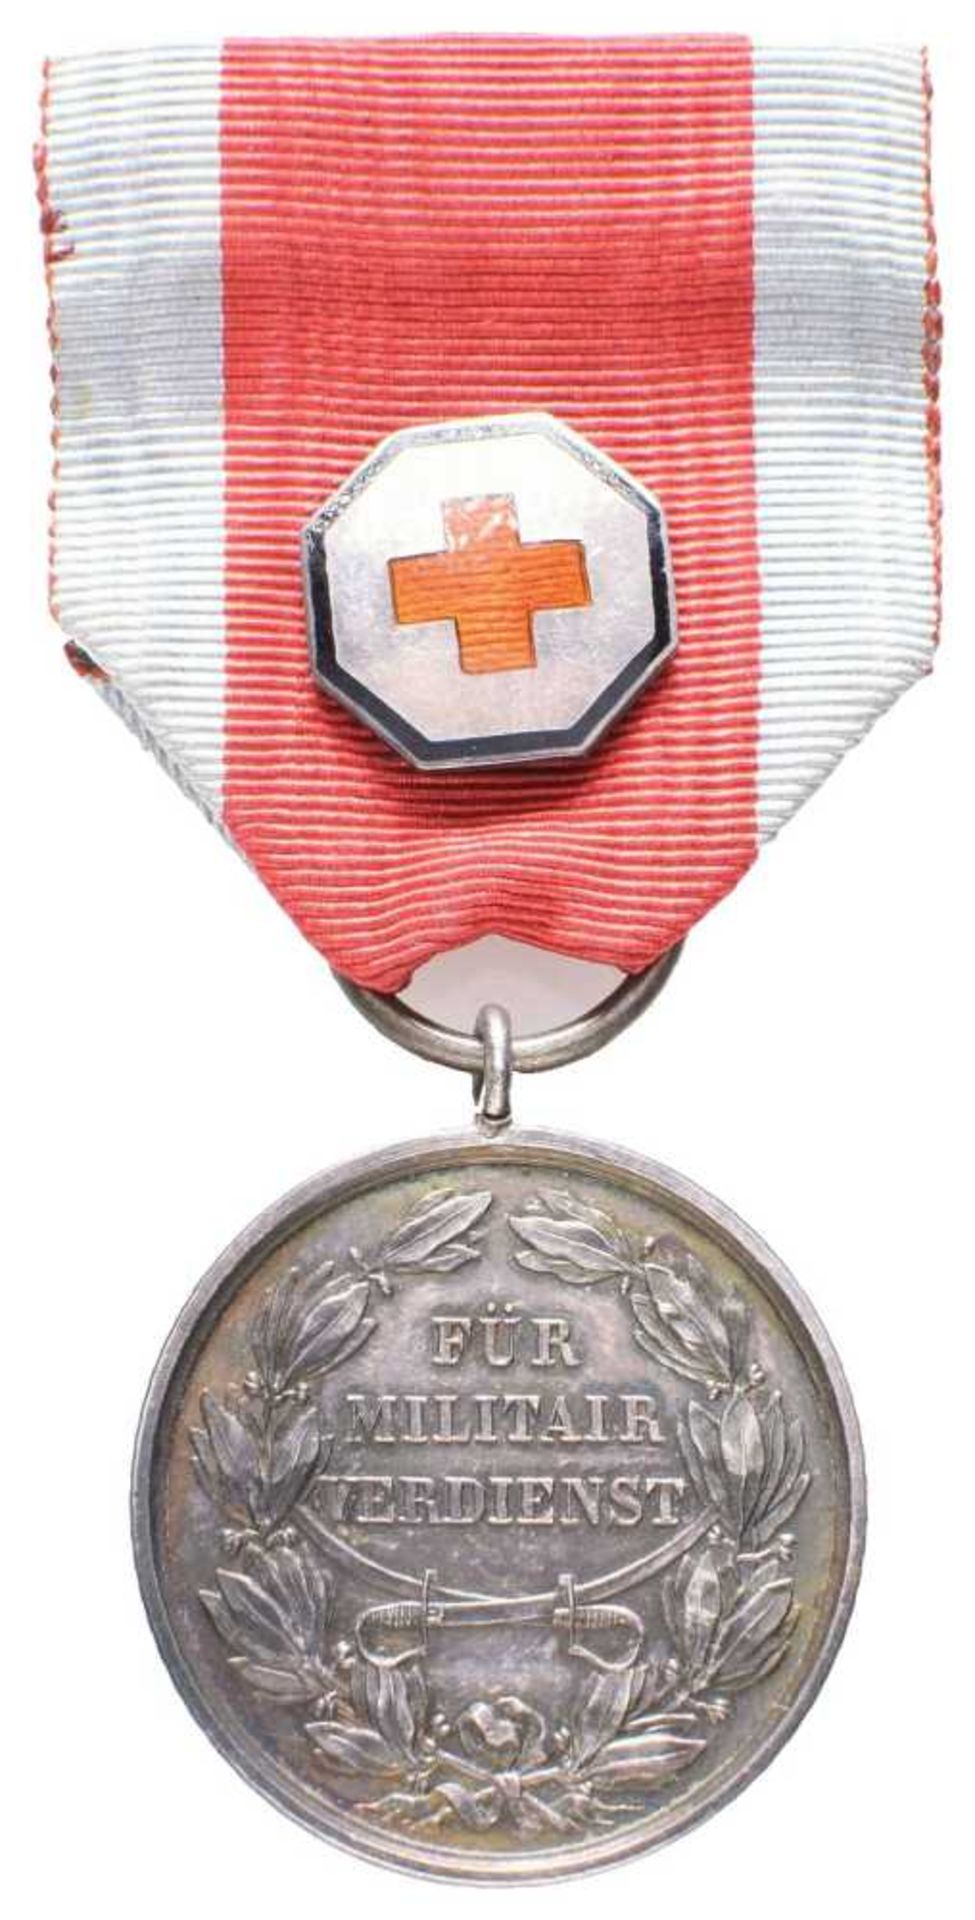 Schaumburg-Lippe, Silberne Militärverdienstmedaille mit emailliertem Genfer Kreuz auf dem Band, Silb